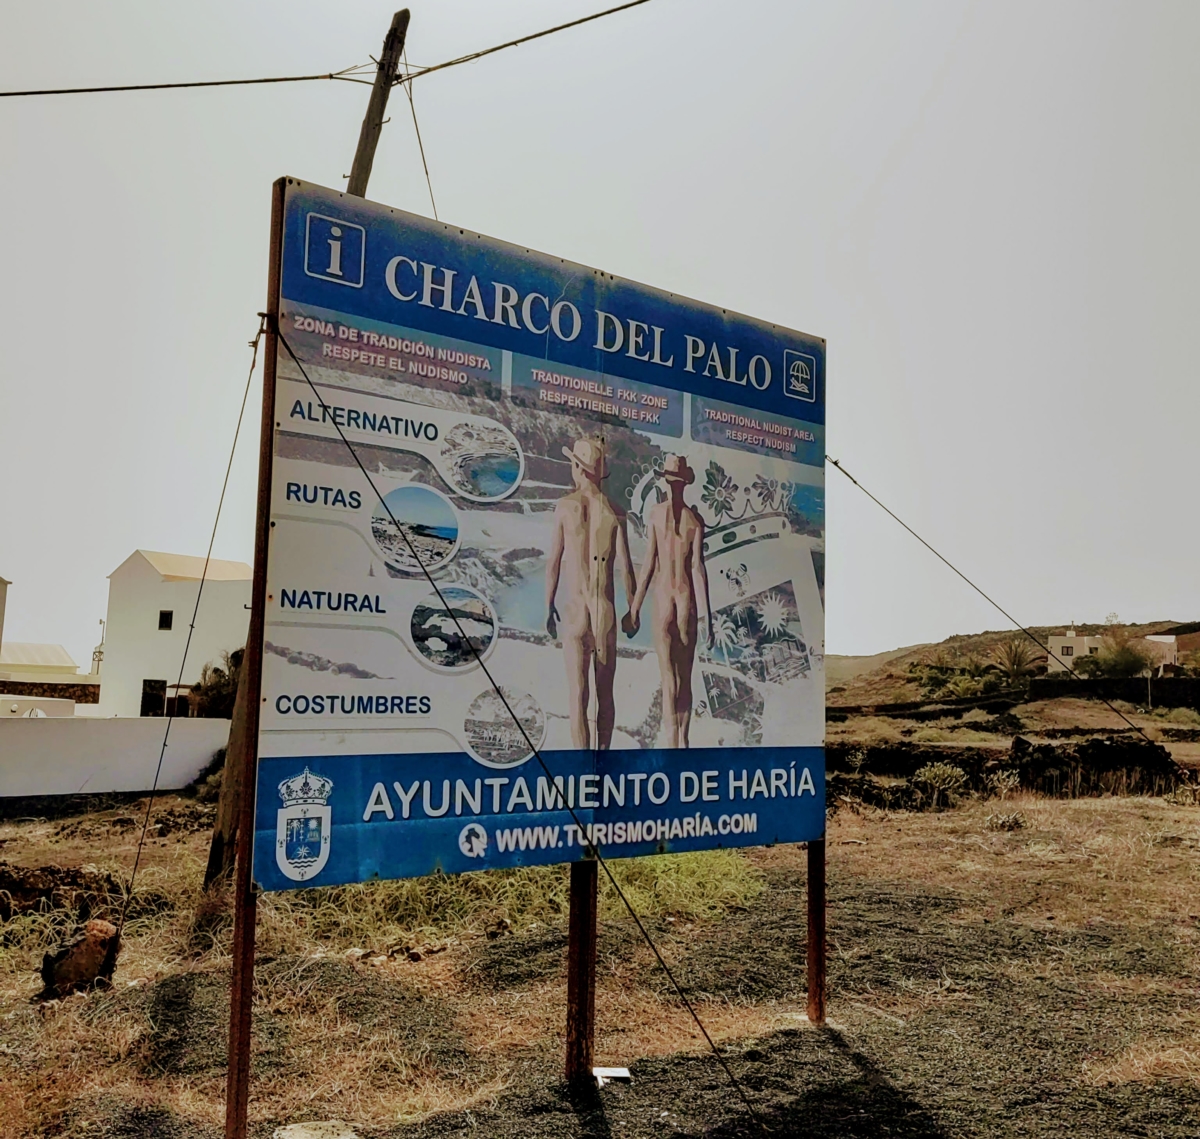 Vstup do nudistického mesta Charco de Palo.